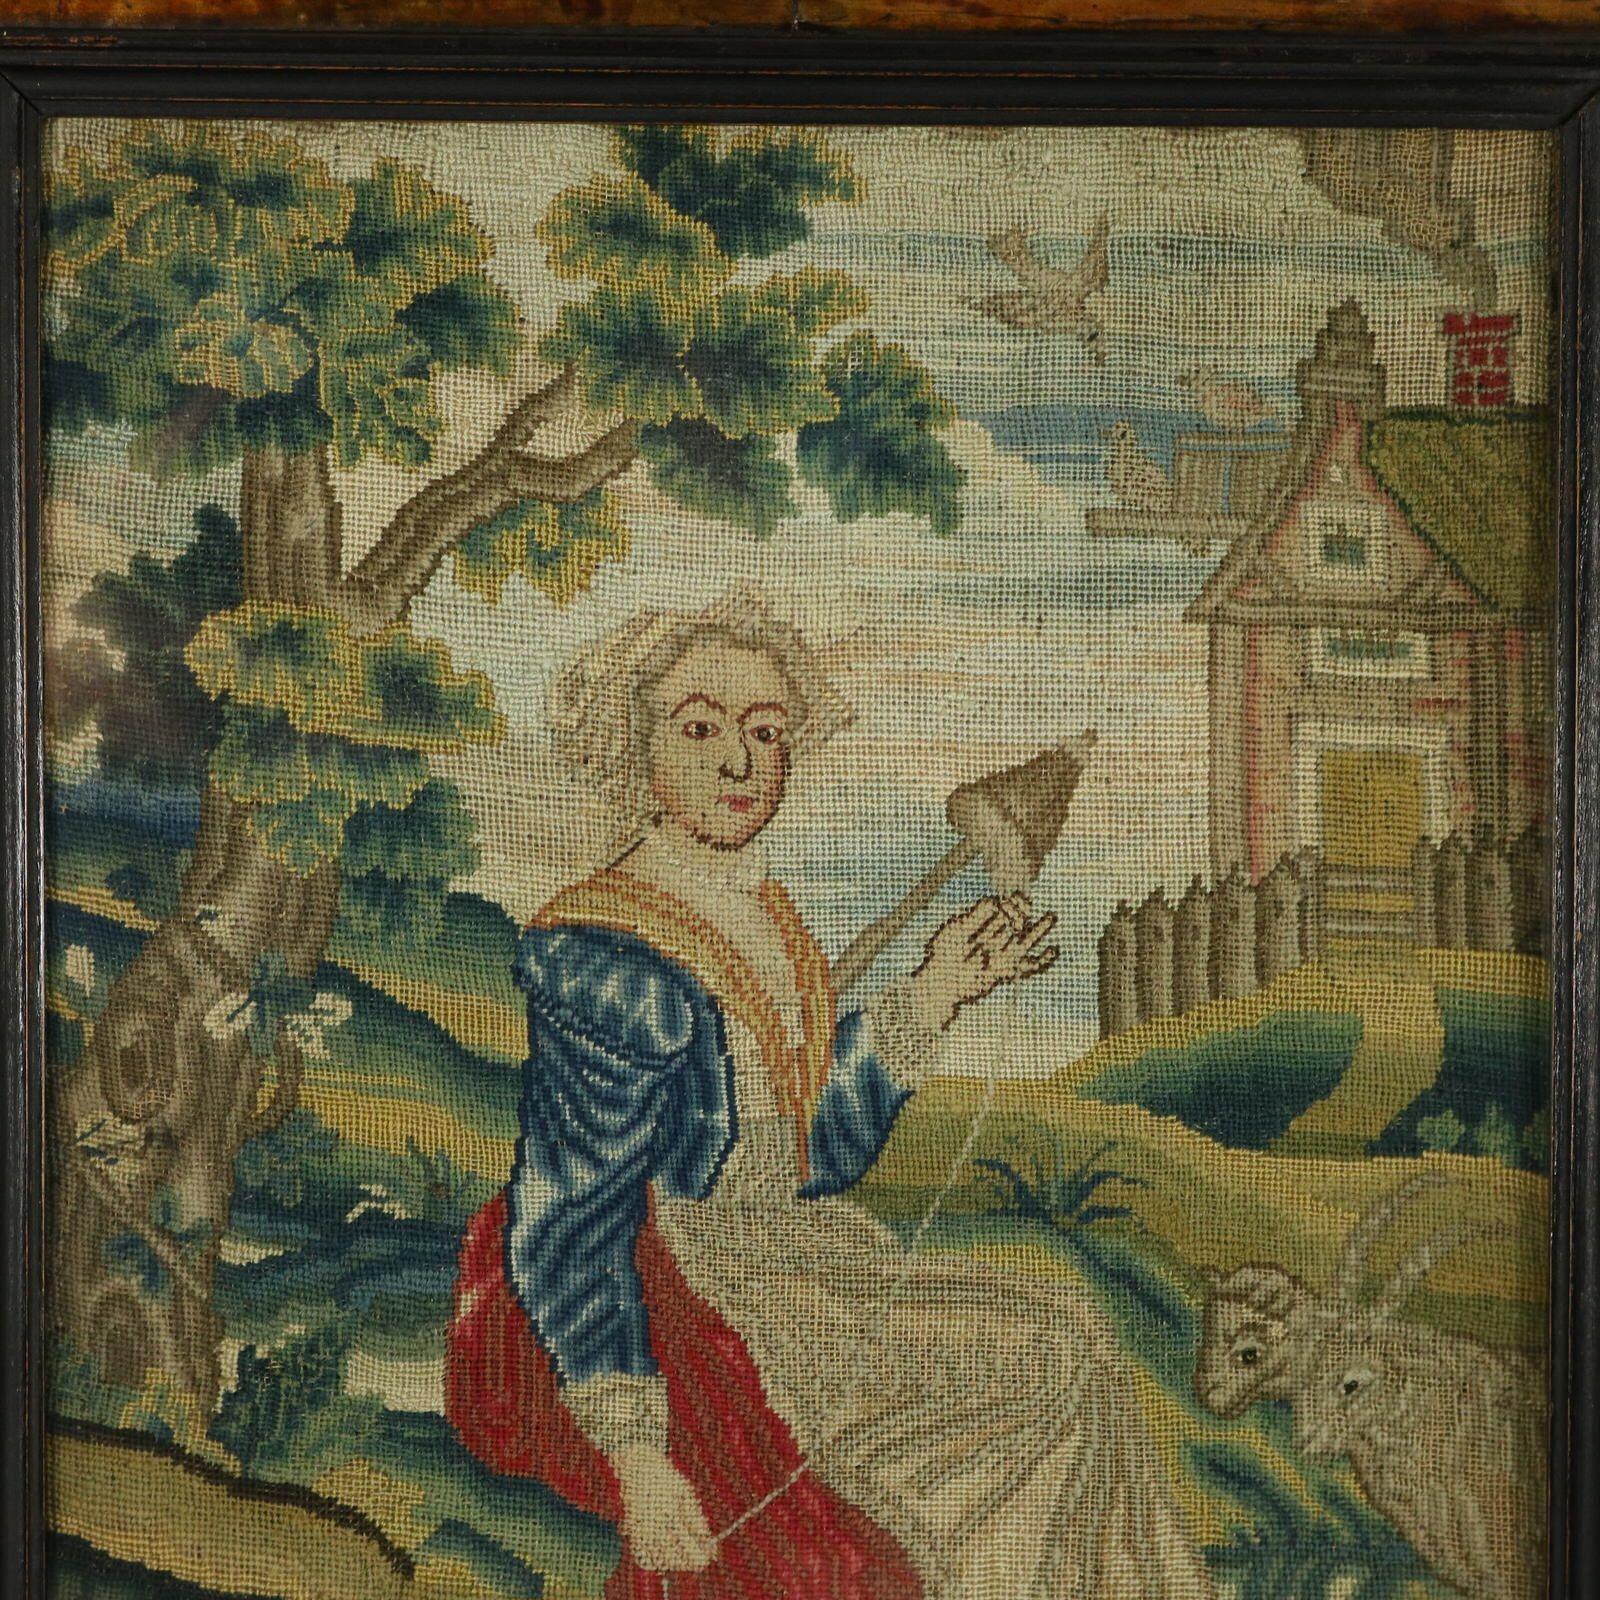 Broderie au petit point en soie du XVIIIe siècle représentant une dame assise près d'un arbre, dans un paysage de campagne. Des chèvres, un chien et des moutons au premier plan. Une maison en arrière-plan avec une cheminée fumante et des oiseaux